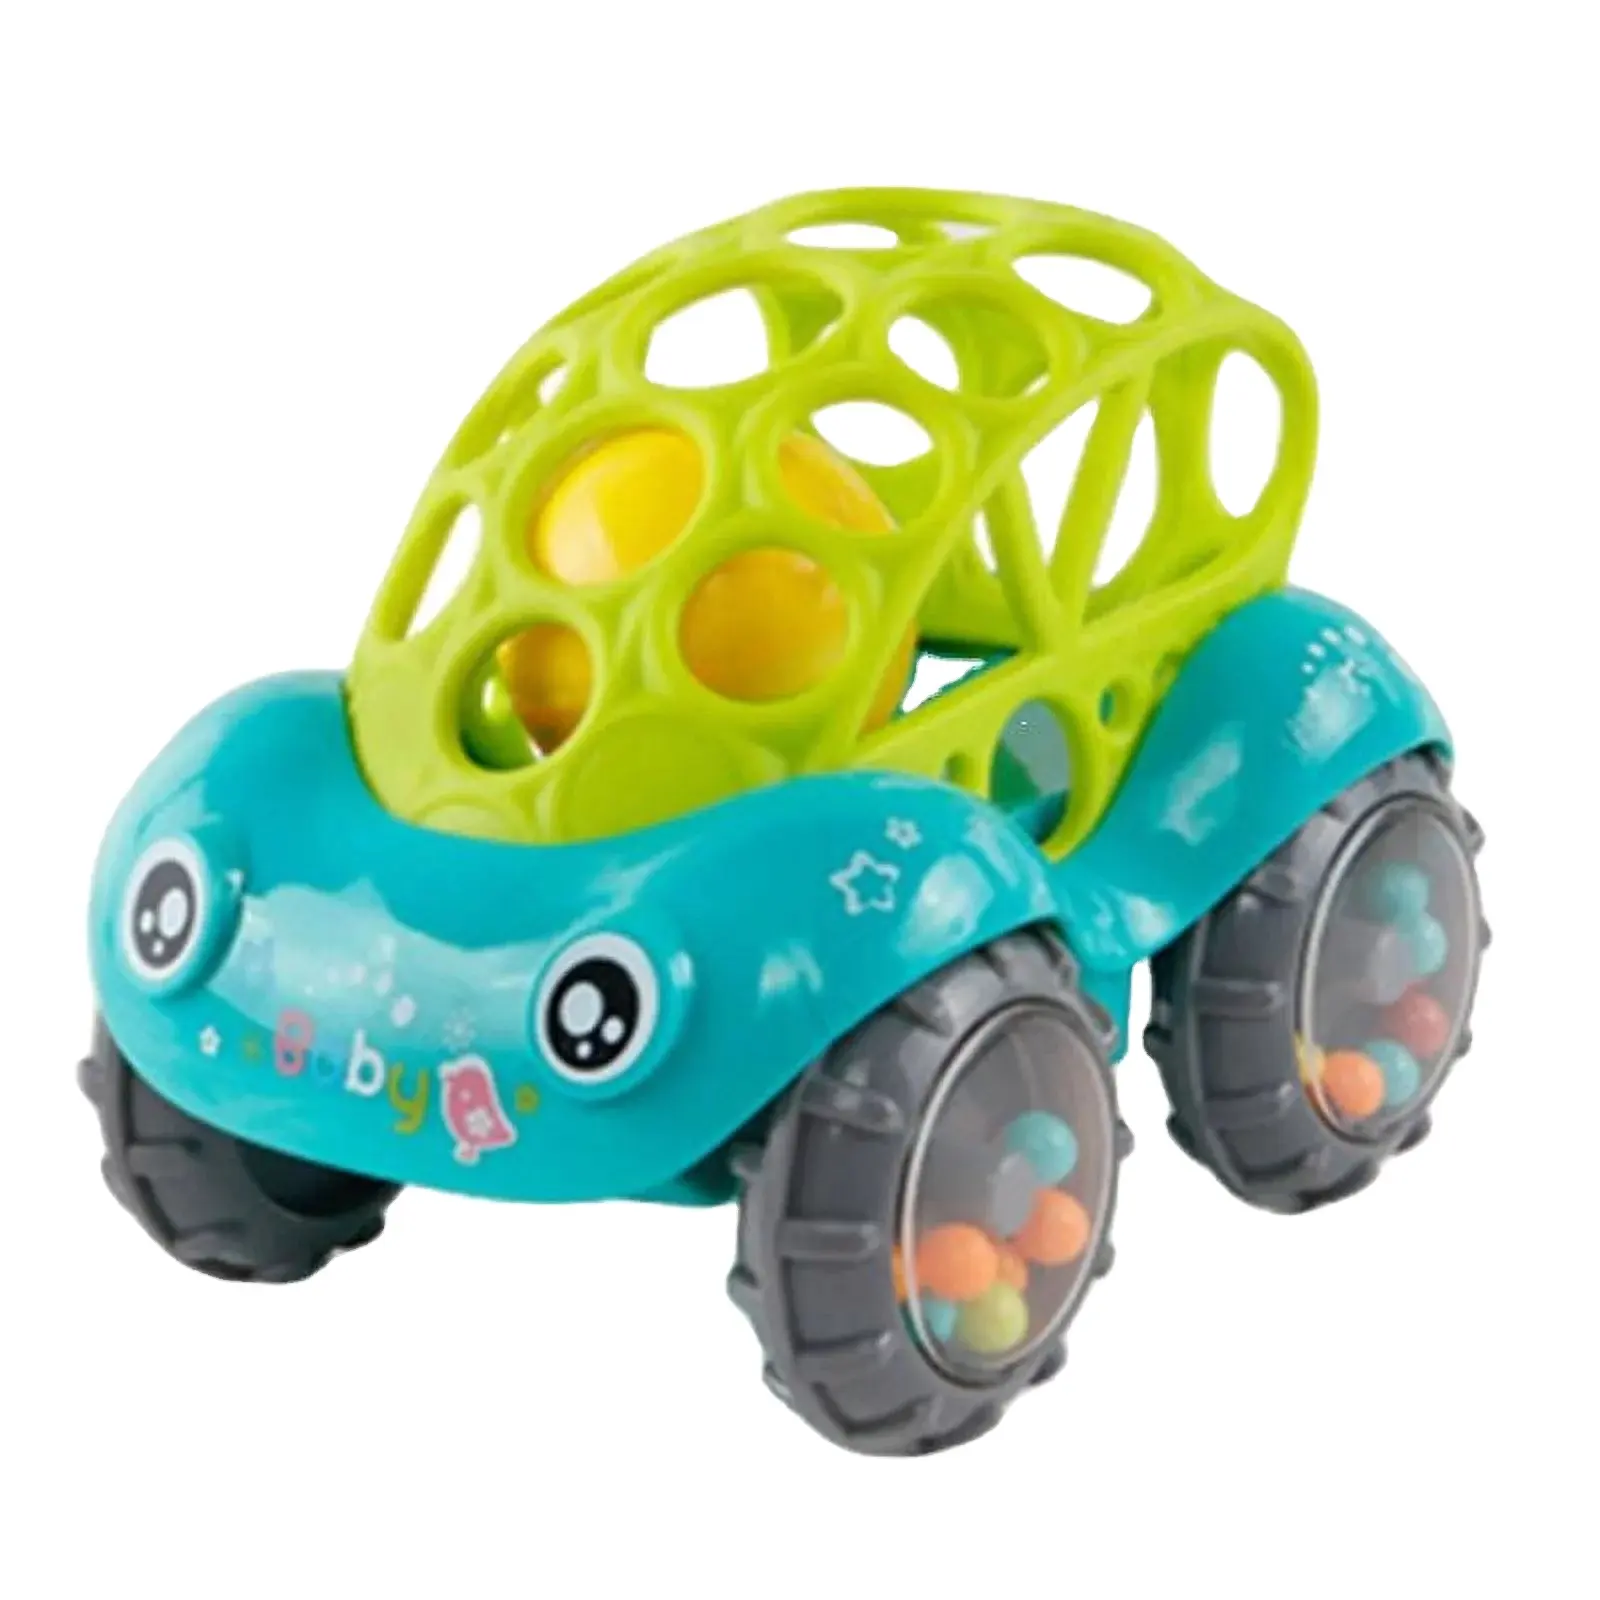 Mini-Baby-Autopuppe Spielzeugkrippe Griff-Handfänger-Ball für Neugeborenes Spielzeug Auto Trägheitsschiebewagen mit bunter Kugel Anti-Fall-Kinderspielzeug